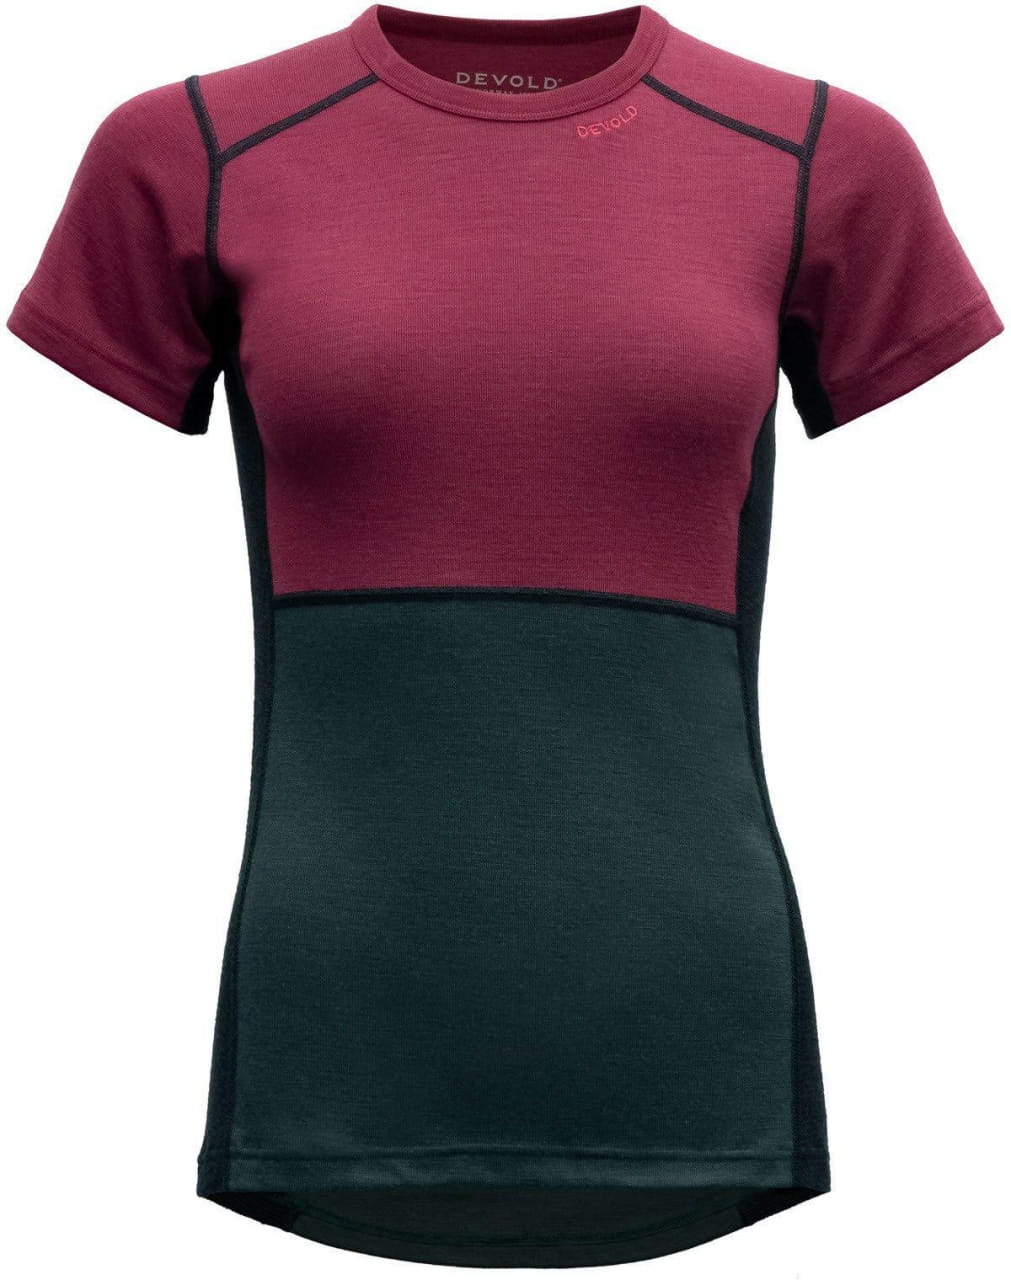 Sporthemd für Frauen Devold Lauparen Merino 190 T-Shirt Wmn